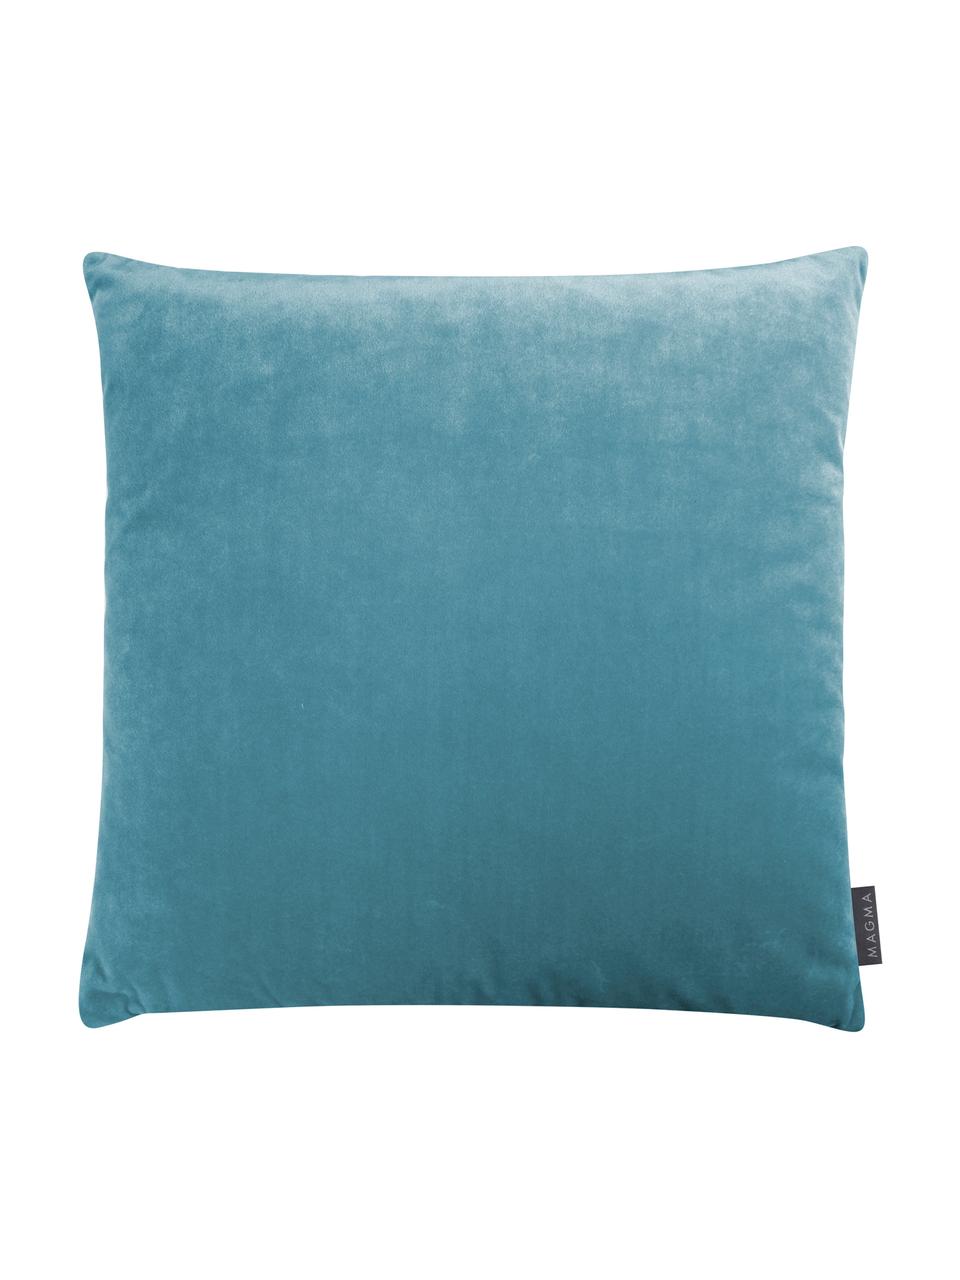 Poszewka na poduszkę z wypukłym wzorem Tilas, Miętowo niebieski, kremowy, S 40 x D 40 cm